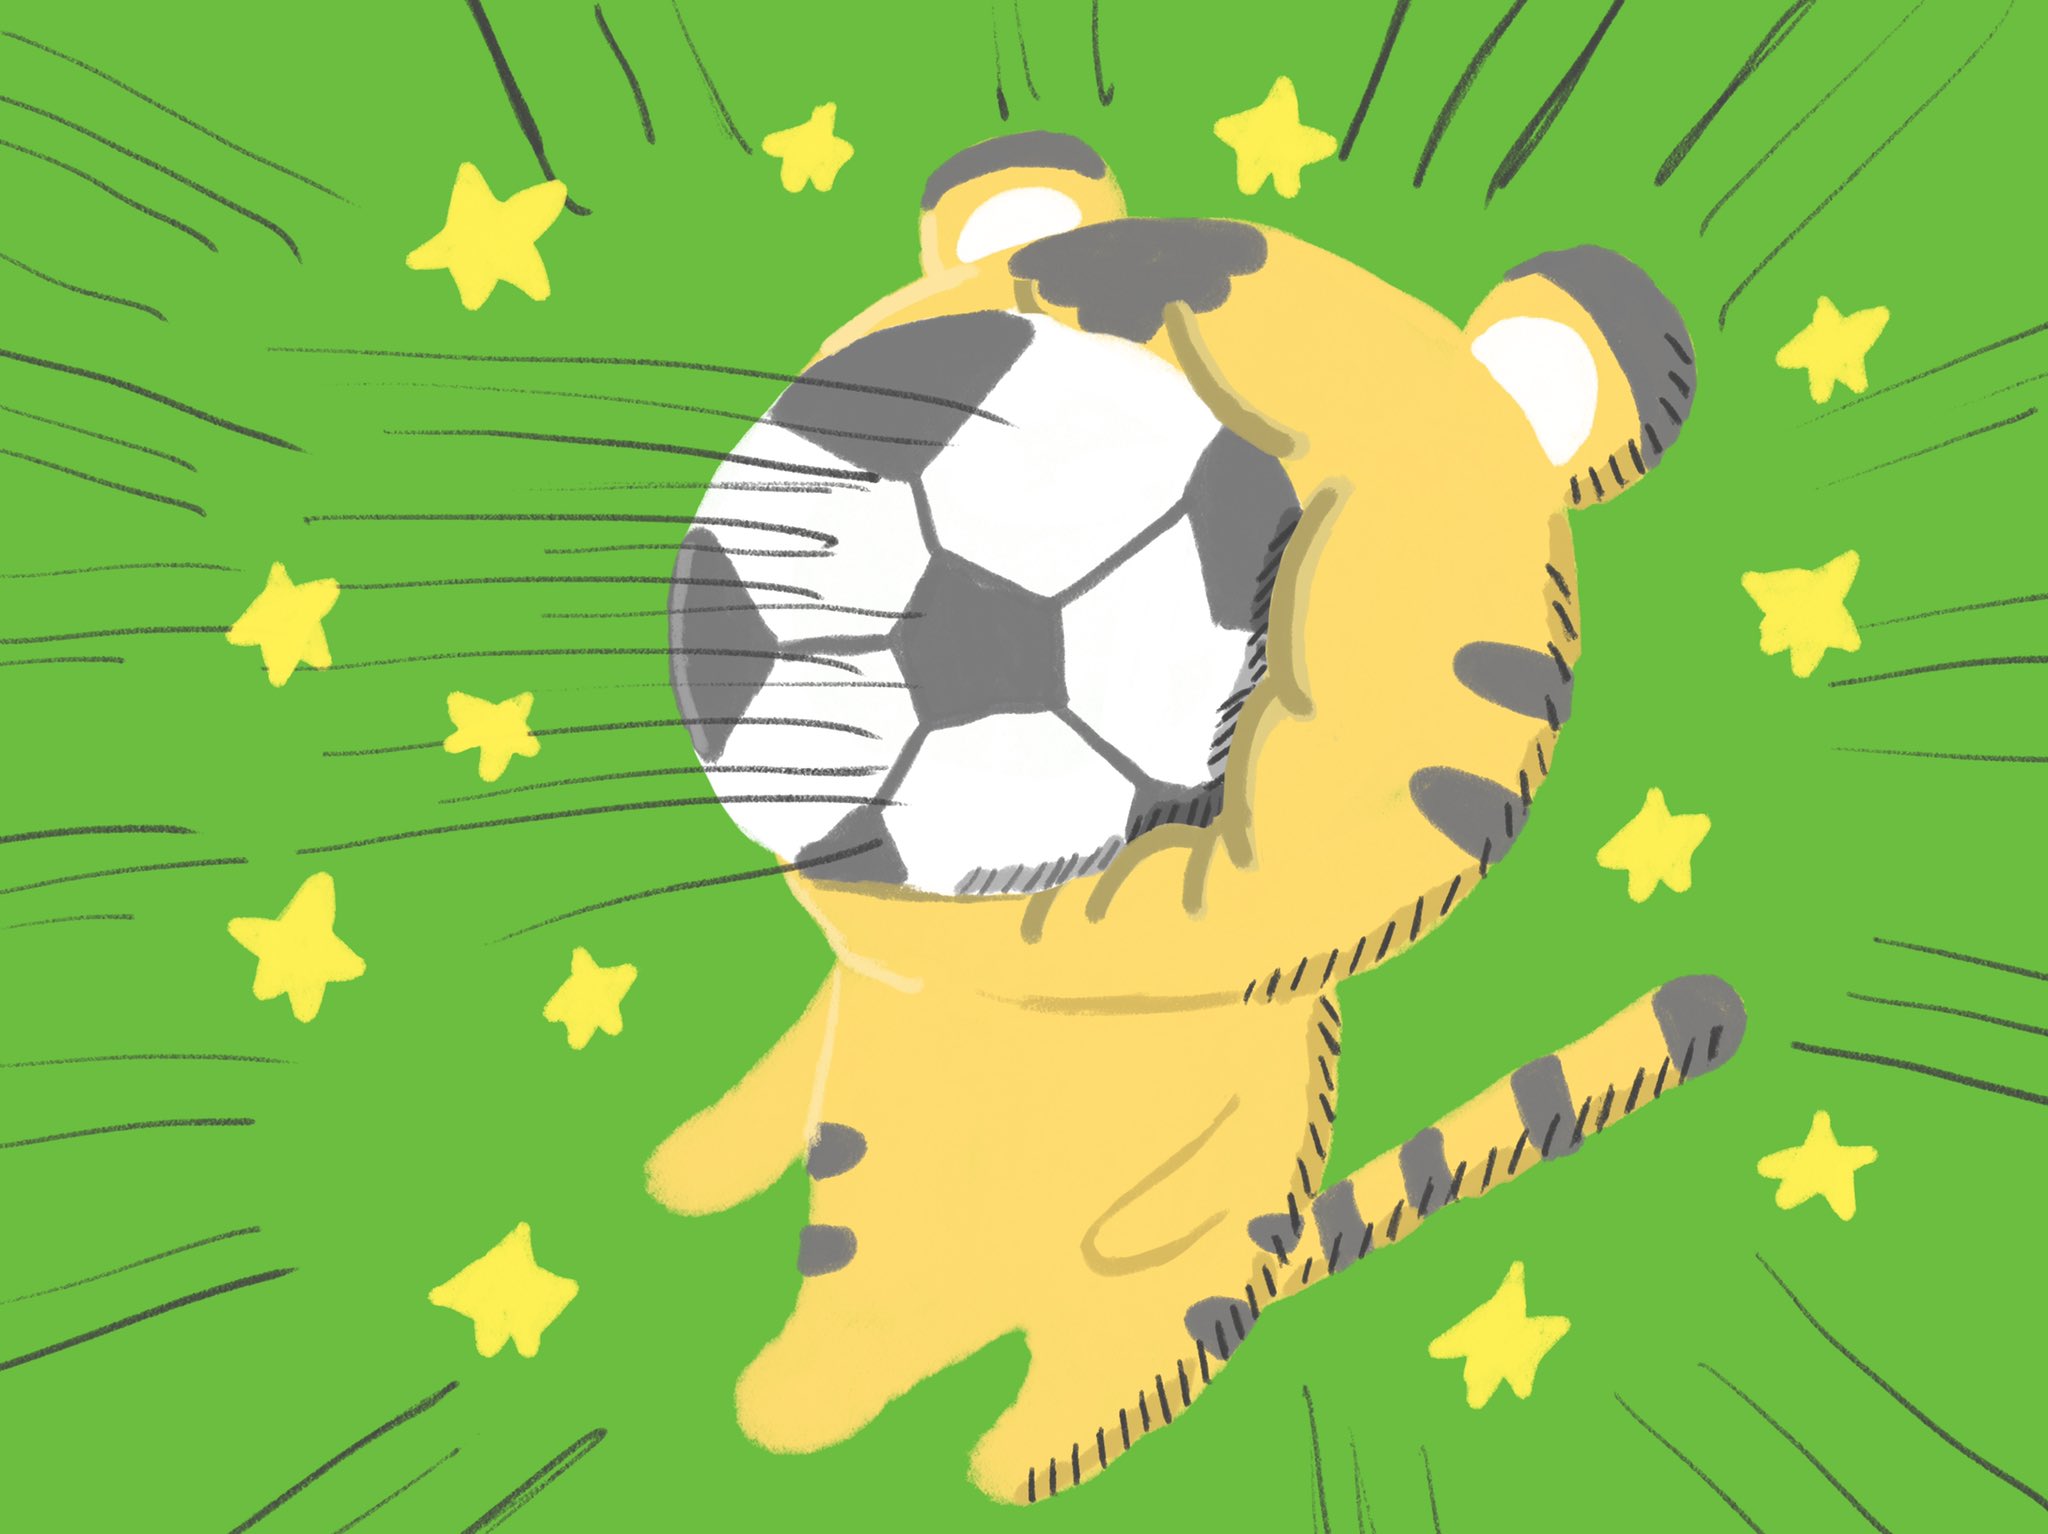 Twitter 上的 Aki かわいい子供 動物イラスト描きます サッカーボールが顔面に直撃したトラ イラスト イラストレーター かわいいイラスト 絵描きさんと繫がりたい イラスト好きな人と繋がりたい みんなで楽しむtwitter展覧会 T Co Ednc7pwsco Twitter